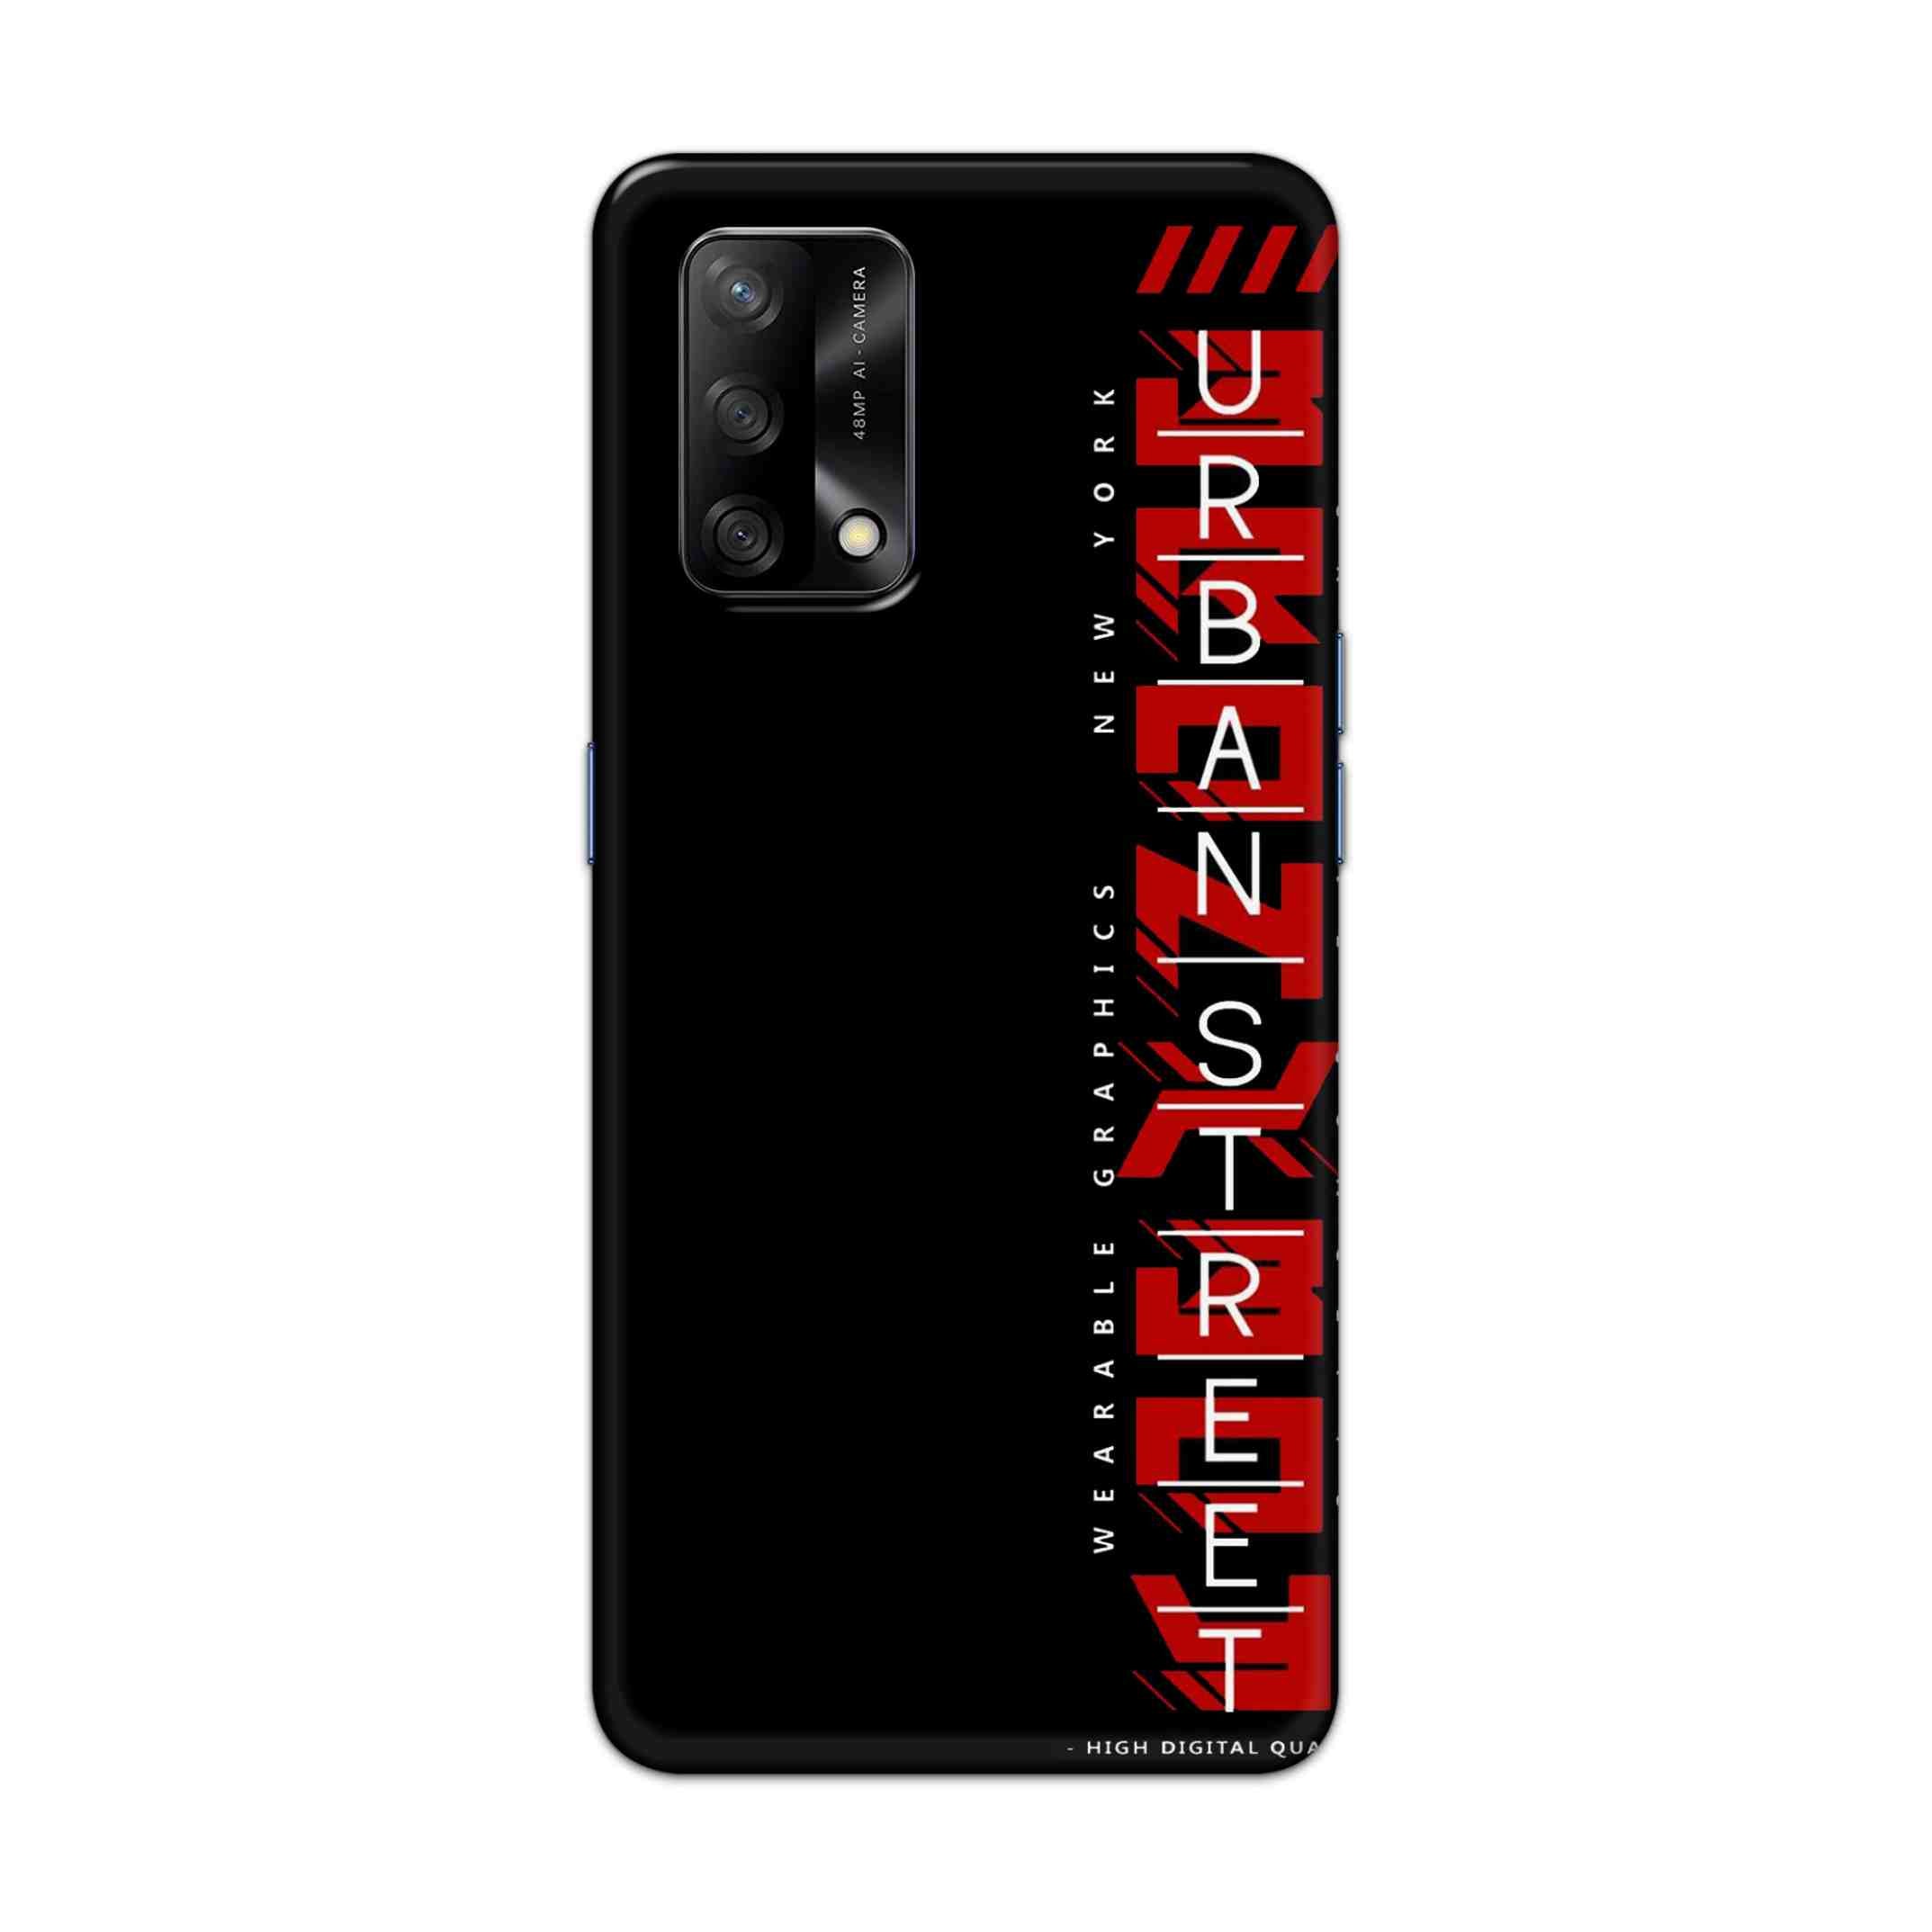 Buy Urban Street Hard Back Mobile Phone Case Cover For Oppo F19 Online